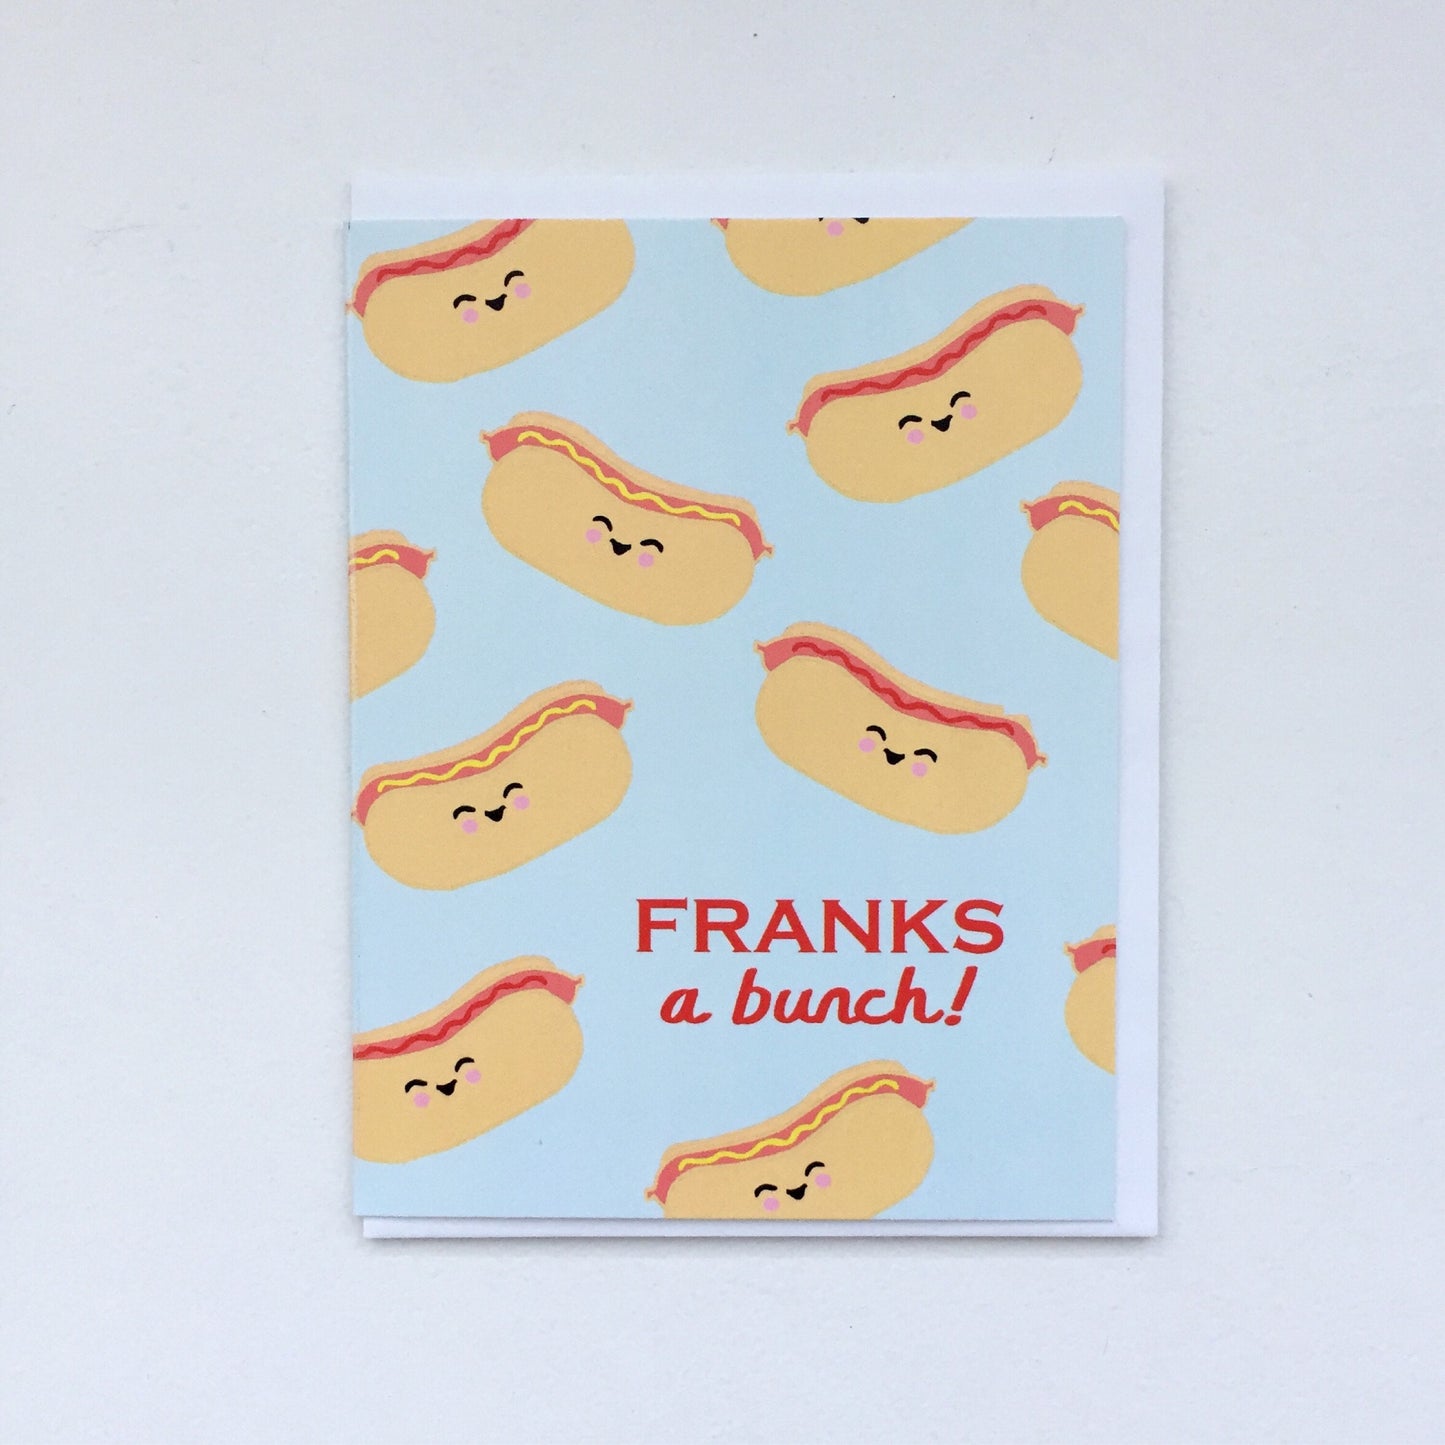 Hot Dog Thank You Card - Hot Dog Art, Weiner Sausage Franks Card, Cute Thank You Card, Punny Thank You Card